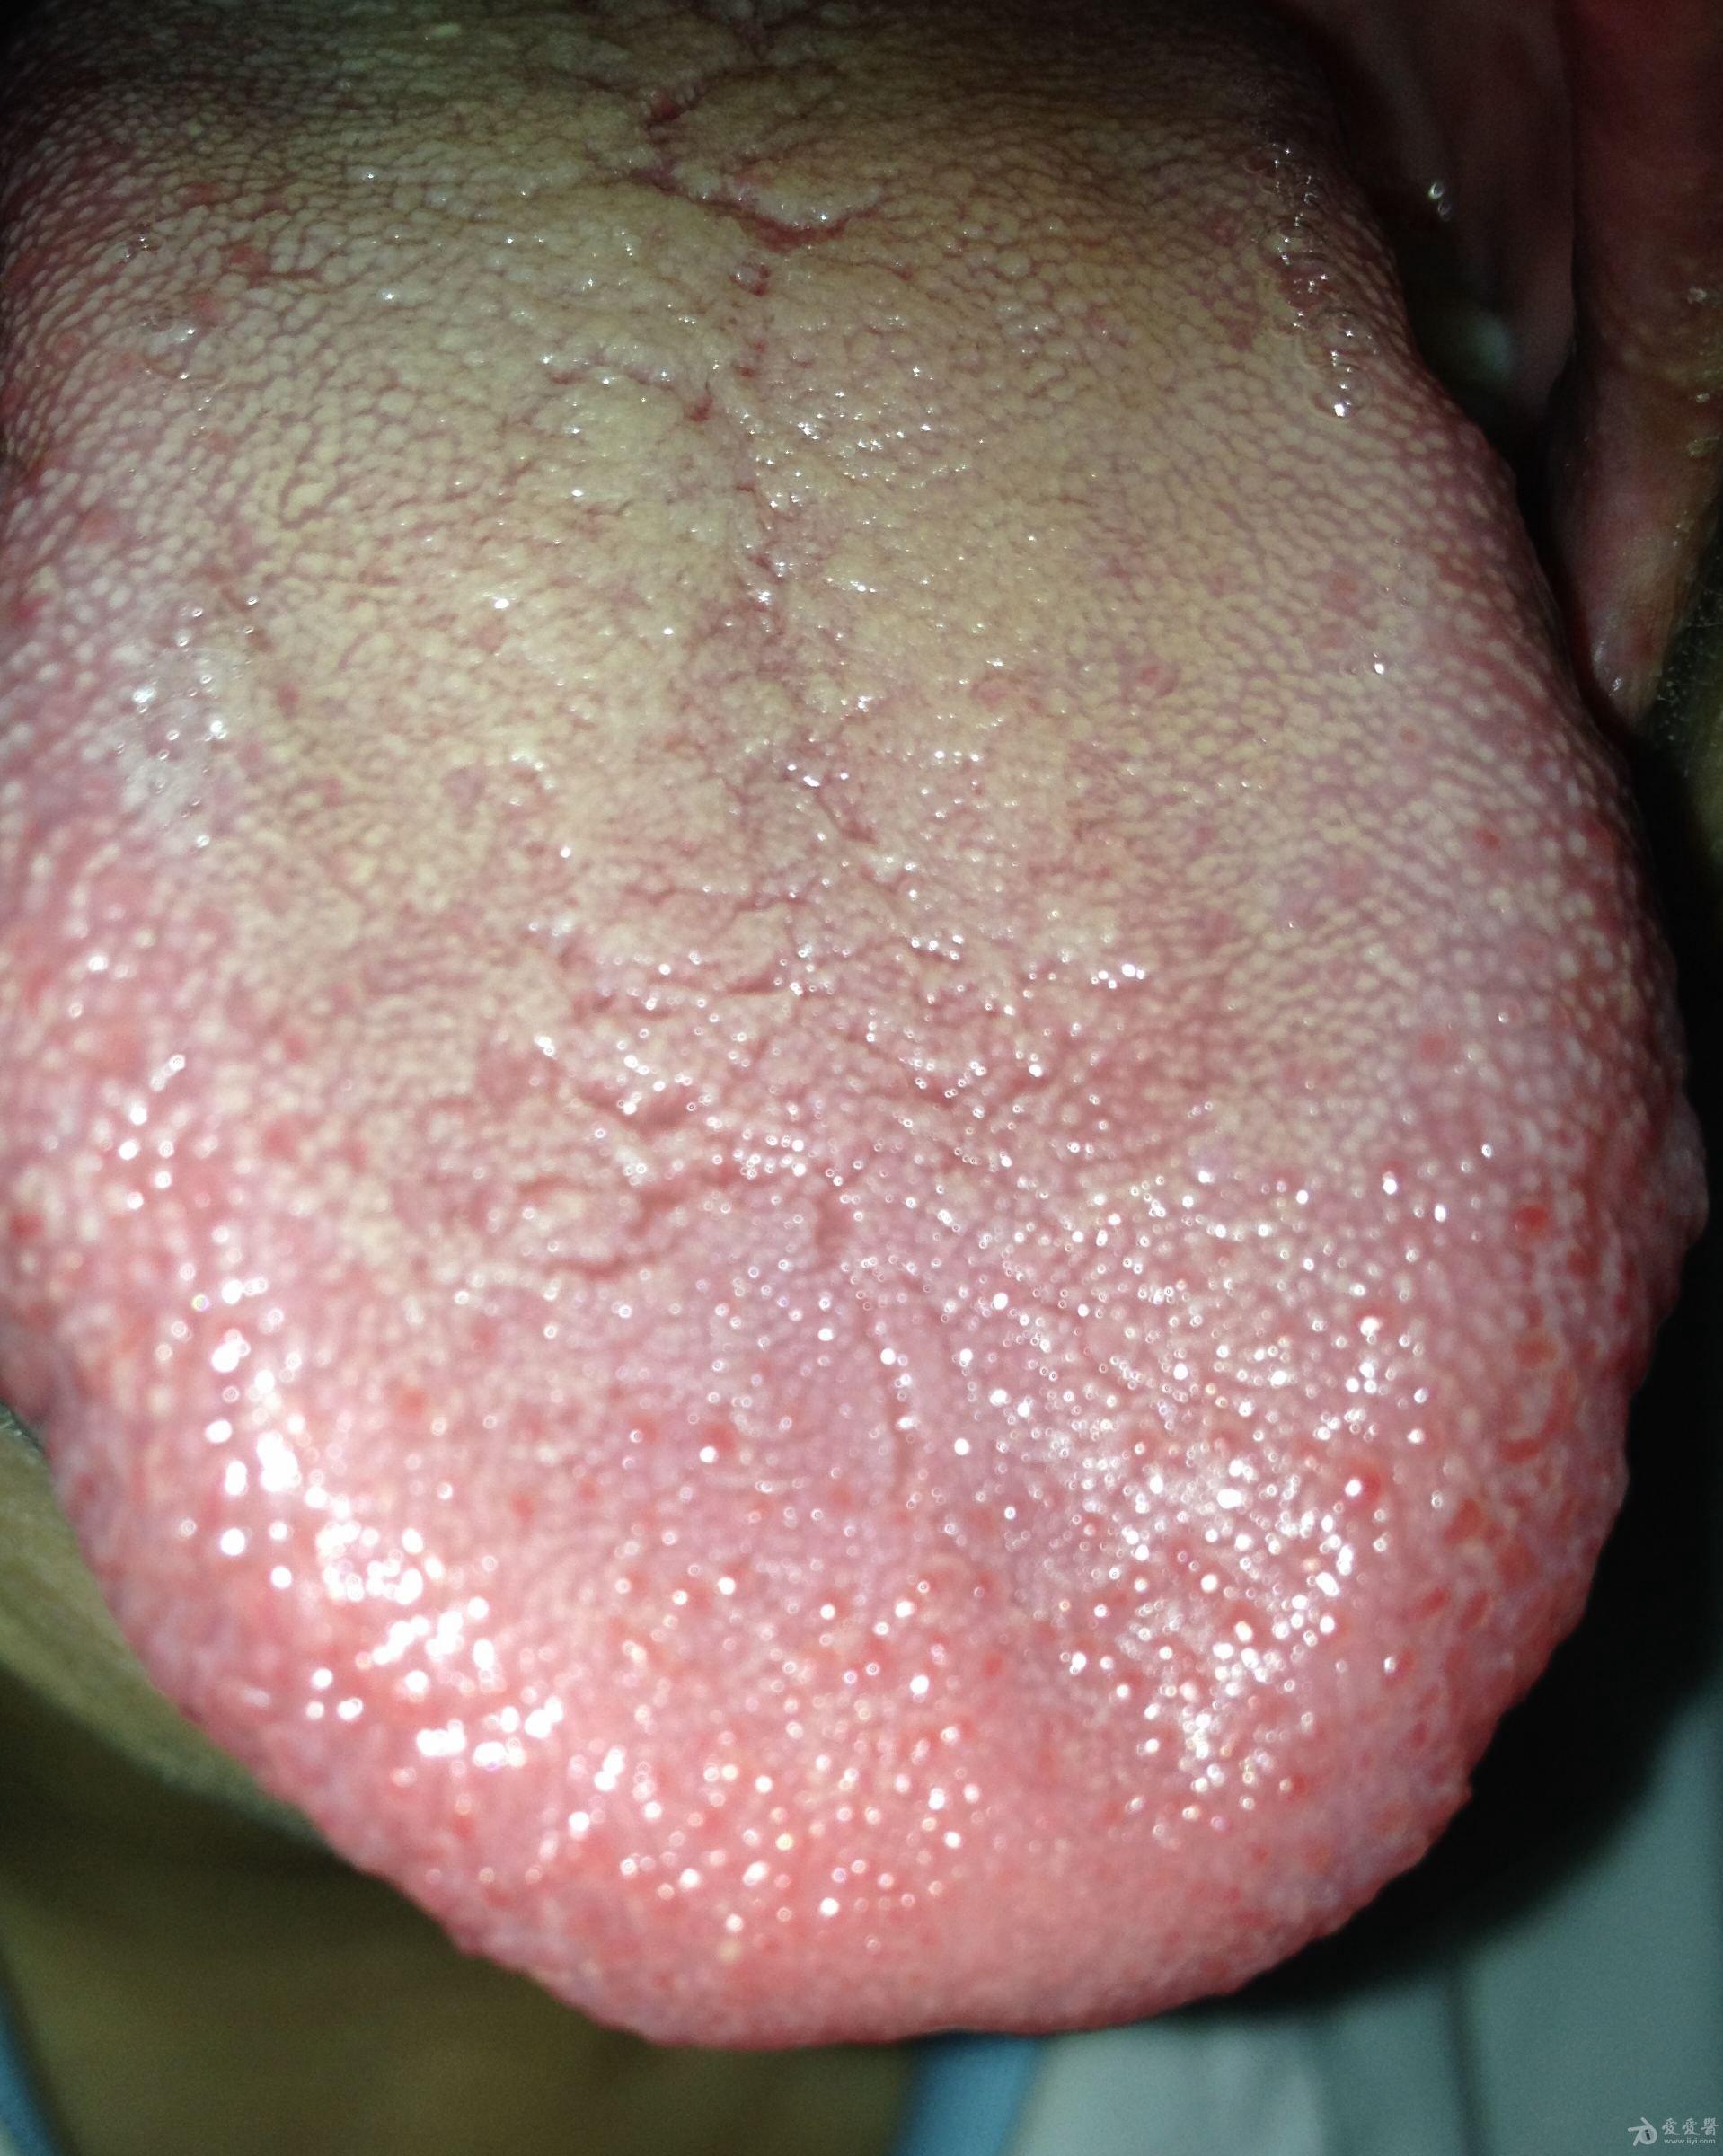 湿热的舌苔是什么样子图片